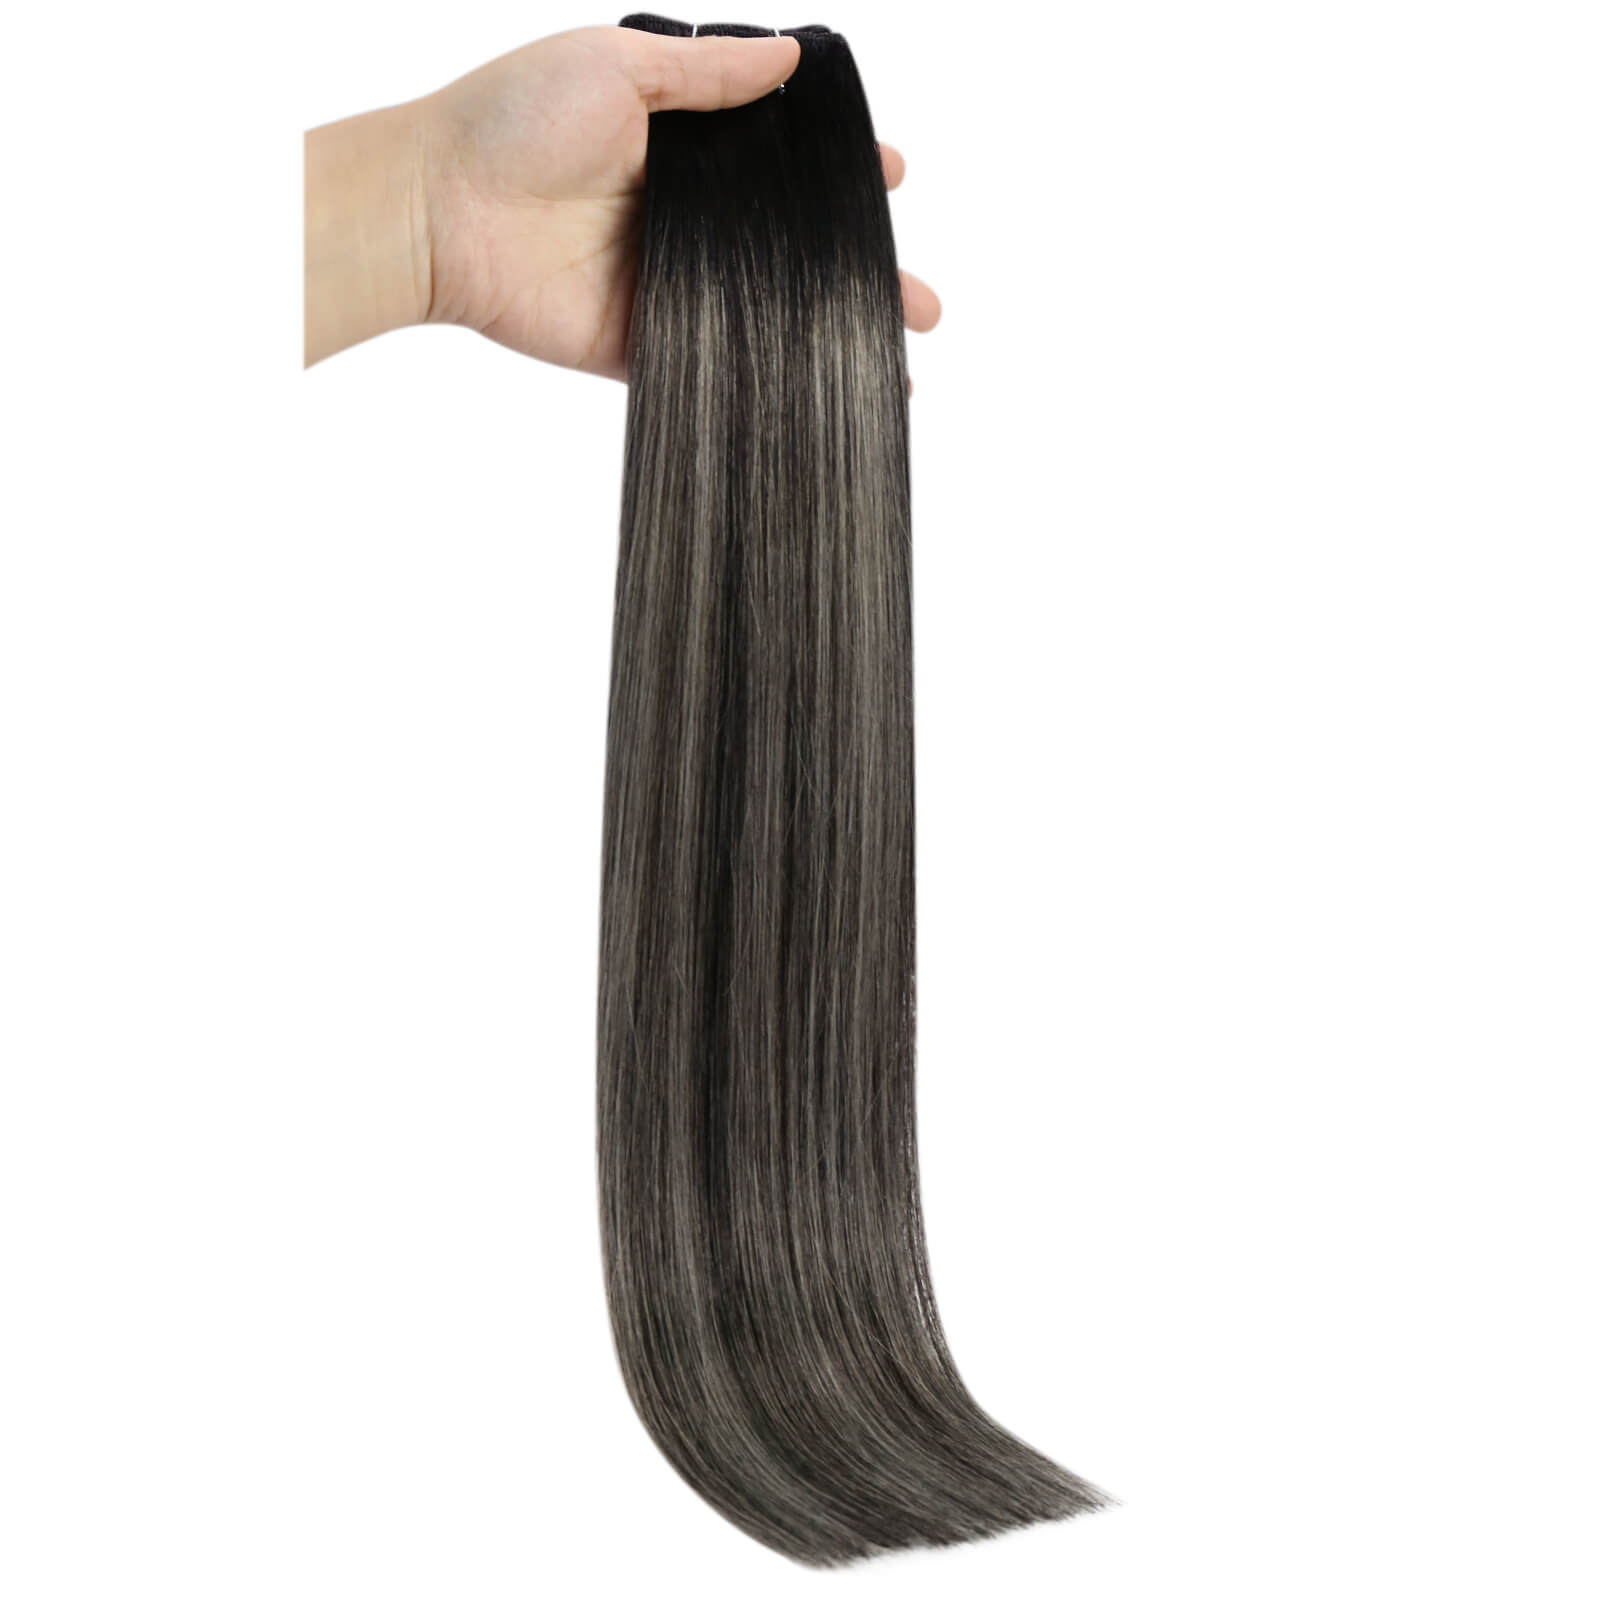 silk smooth machine made hair weft black